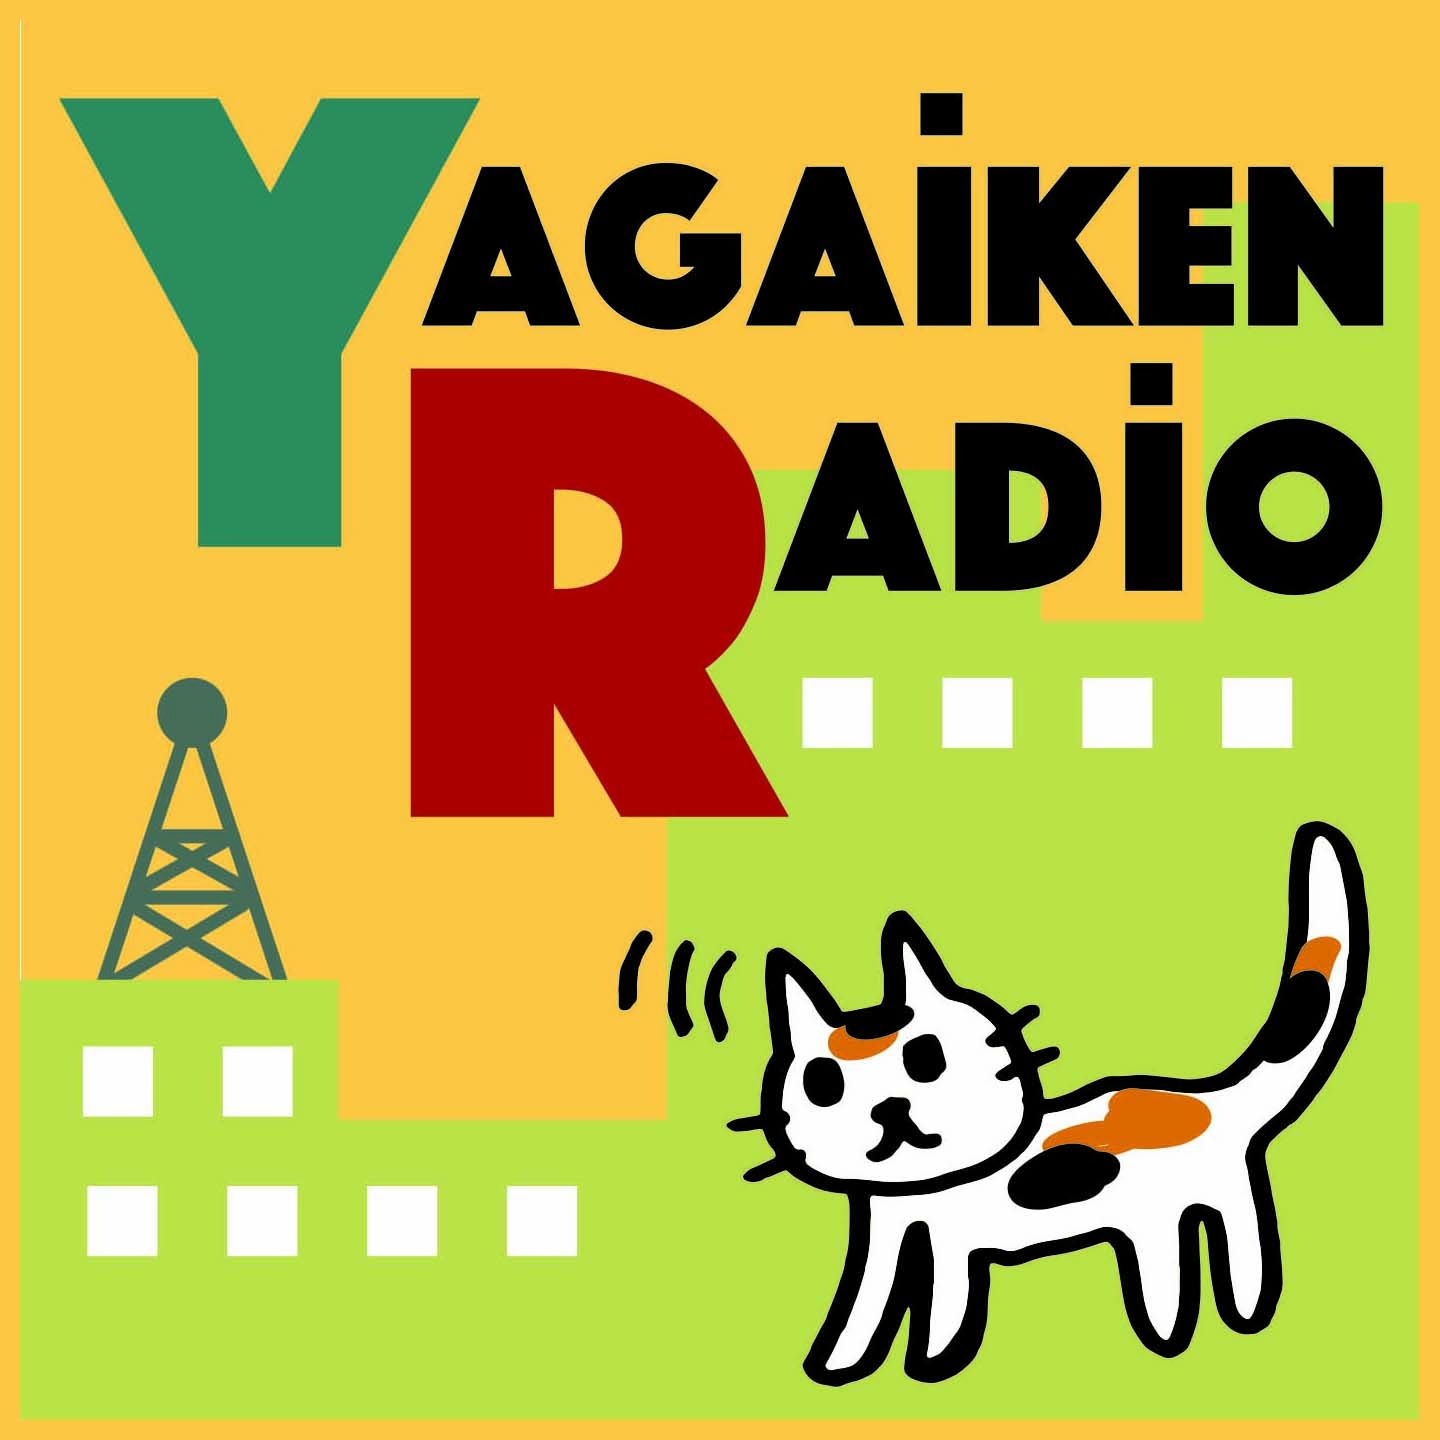 Yagaiken Radio